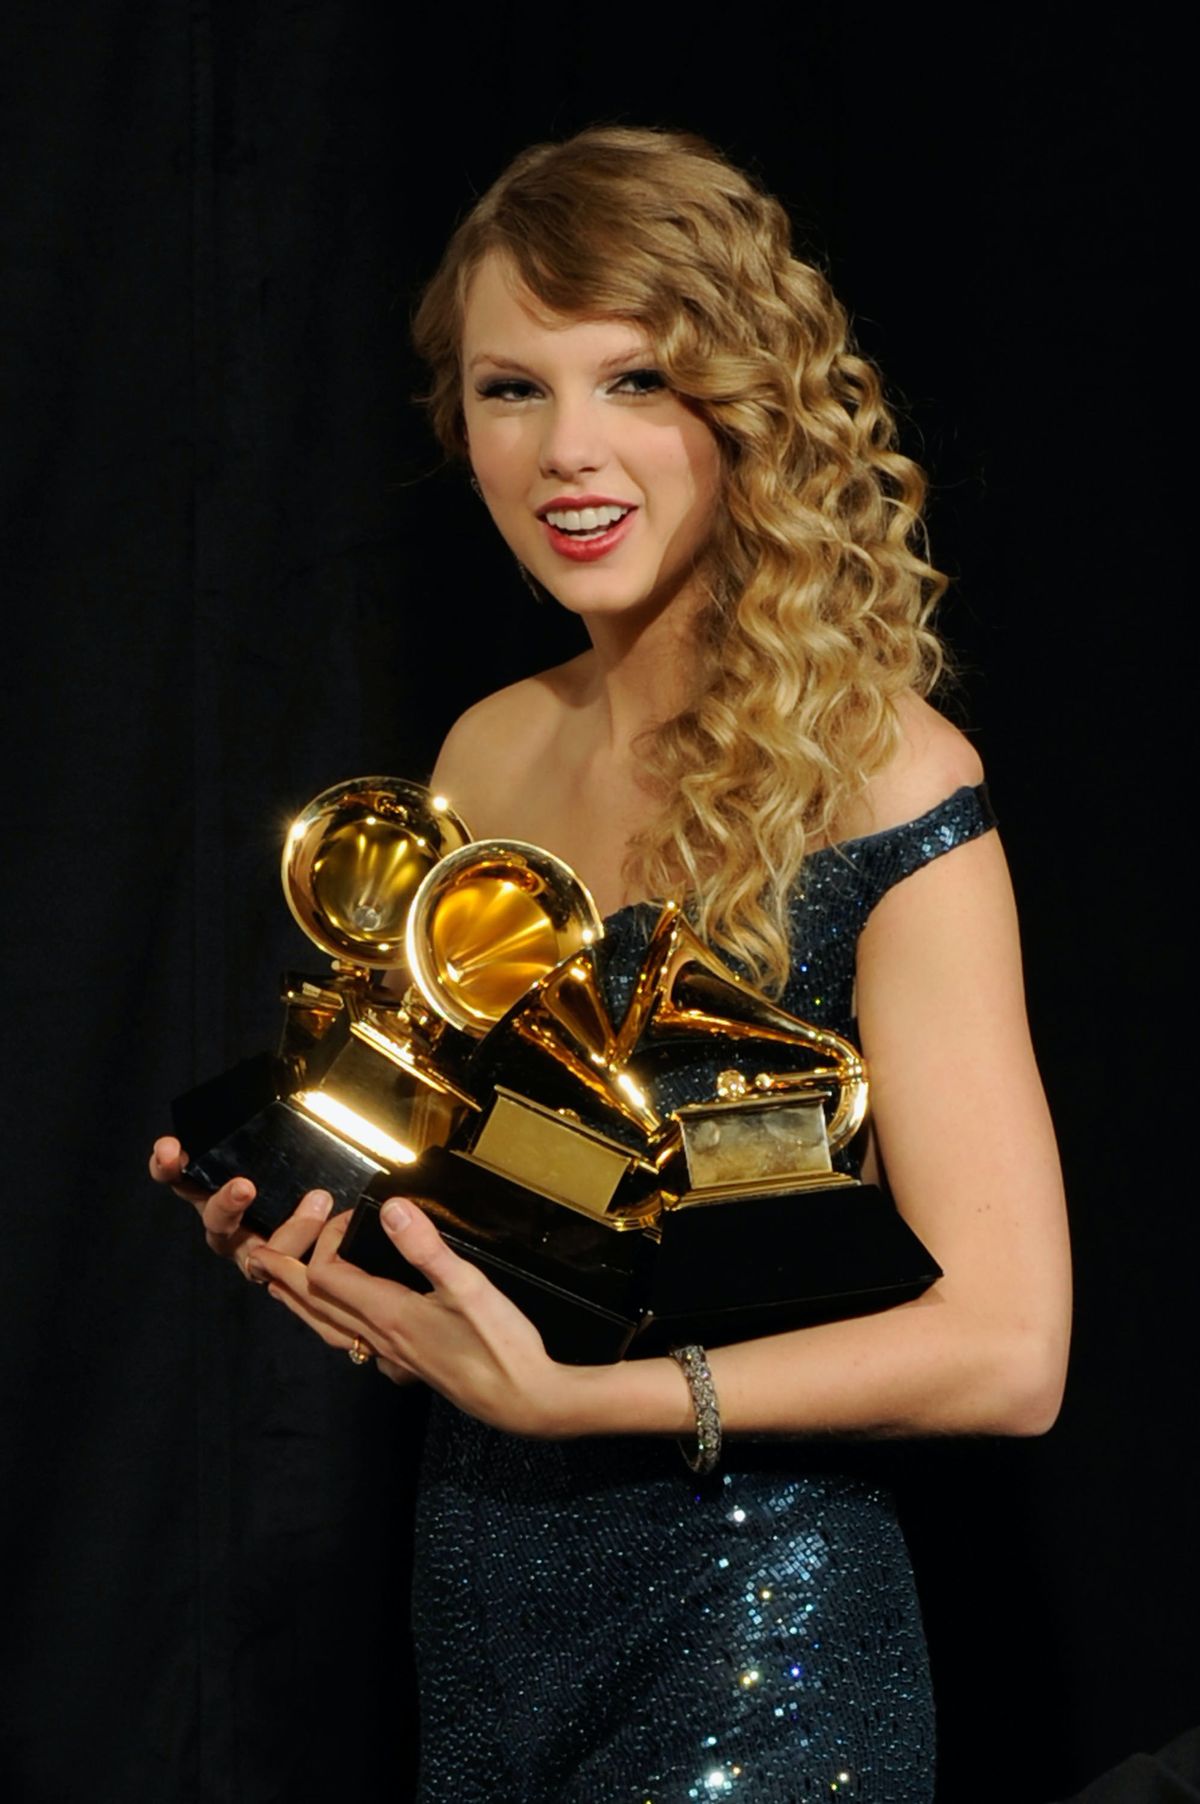 Taylor Swift julkaisee uudelleen äänitetyn version Fearlessistä huhtikuussa